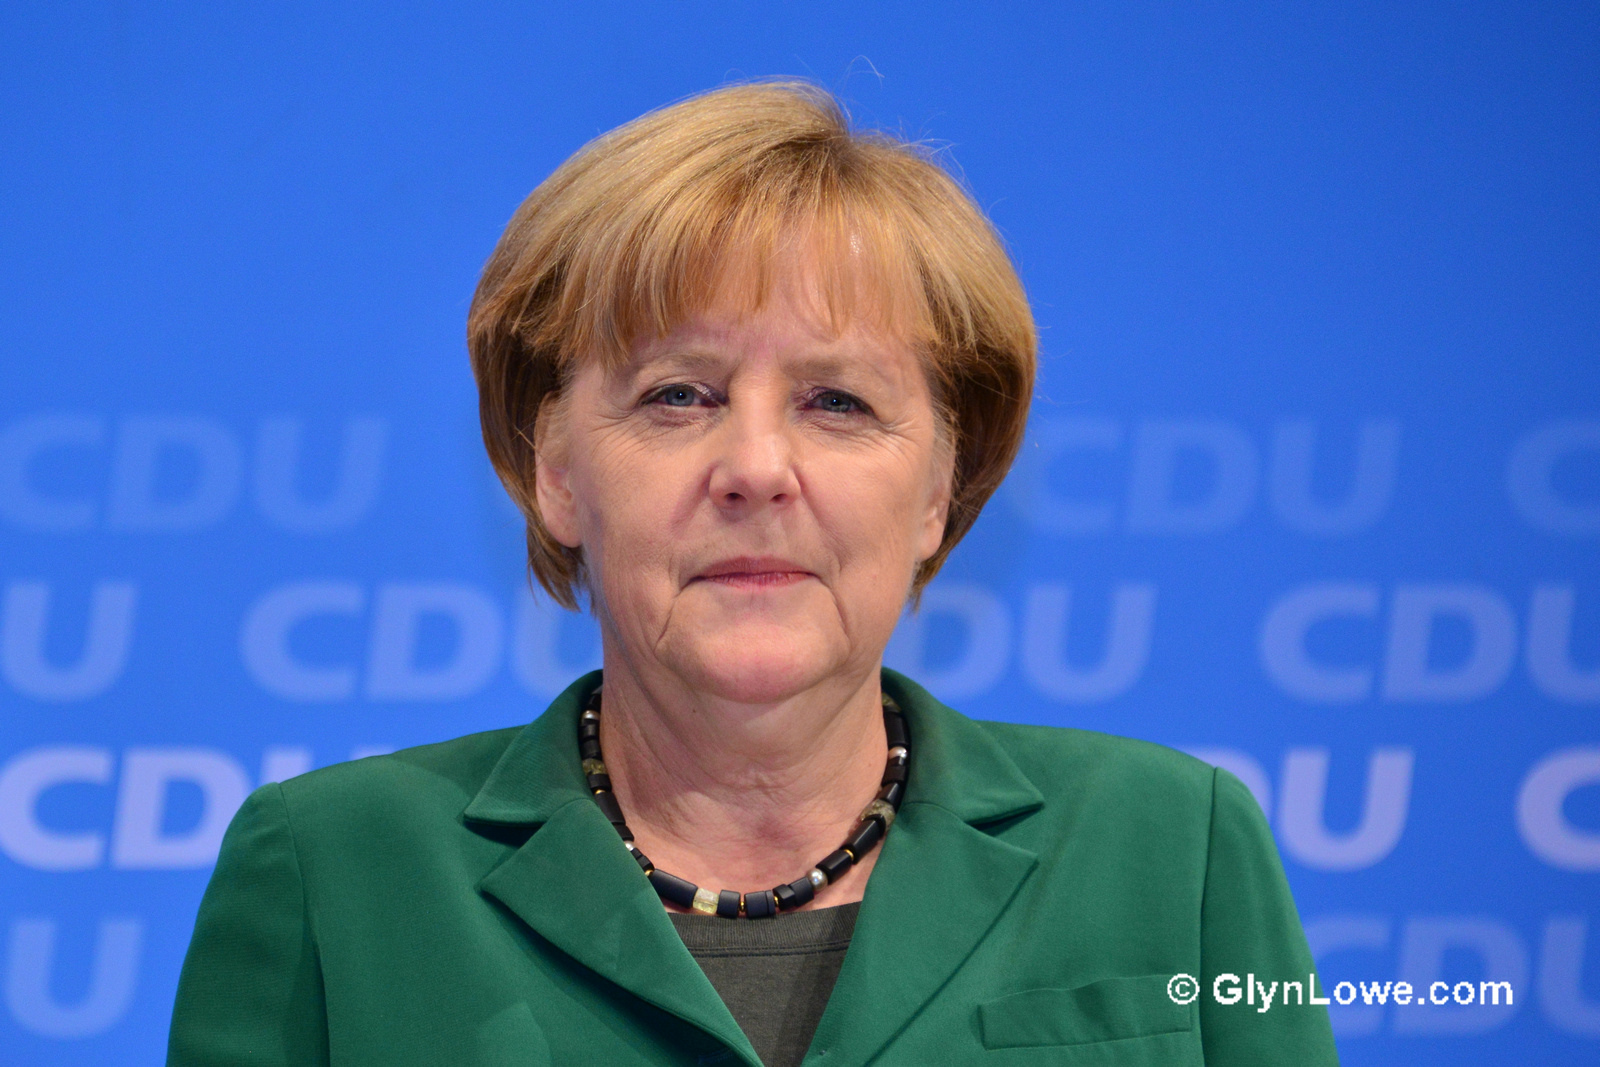 Γερμανία: Η Μέρκελ αντιμέτωπη με την έκρηξη του λαϊκισμού